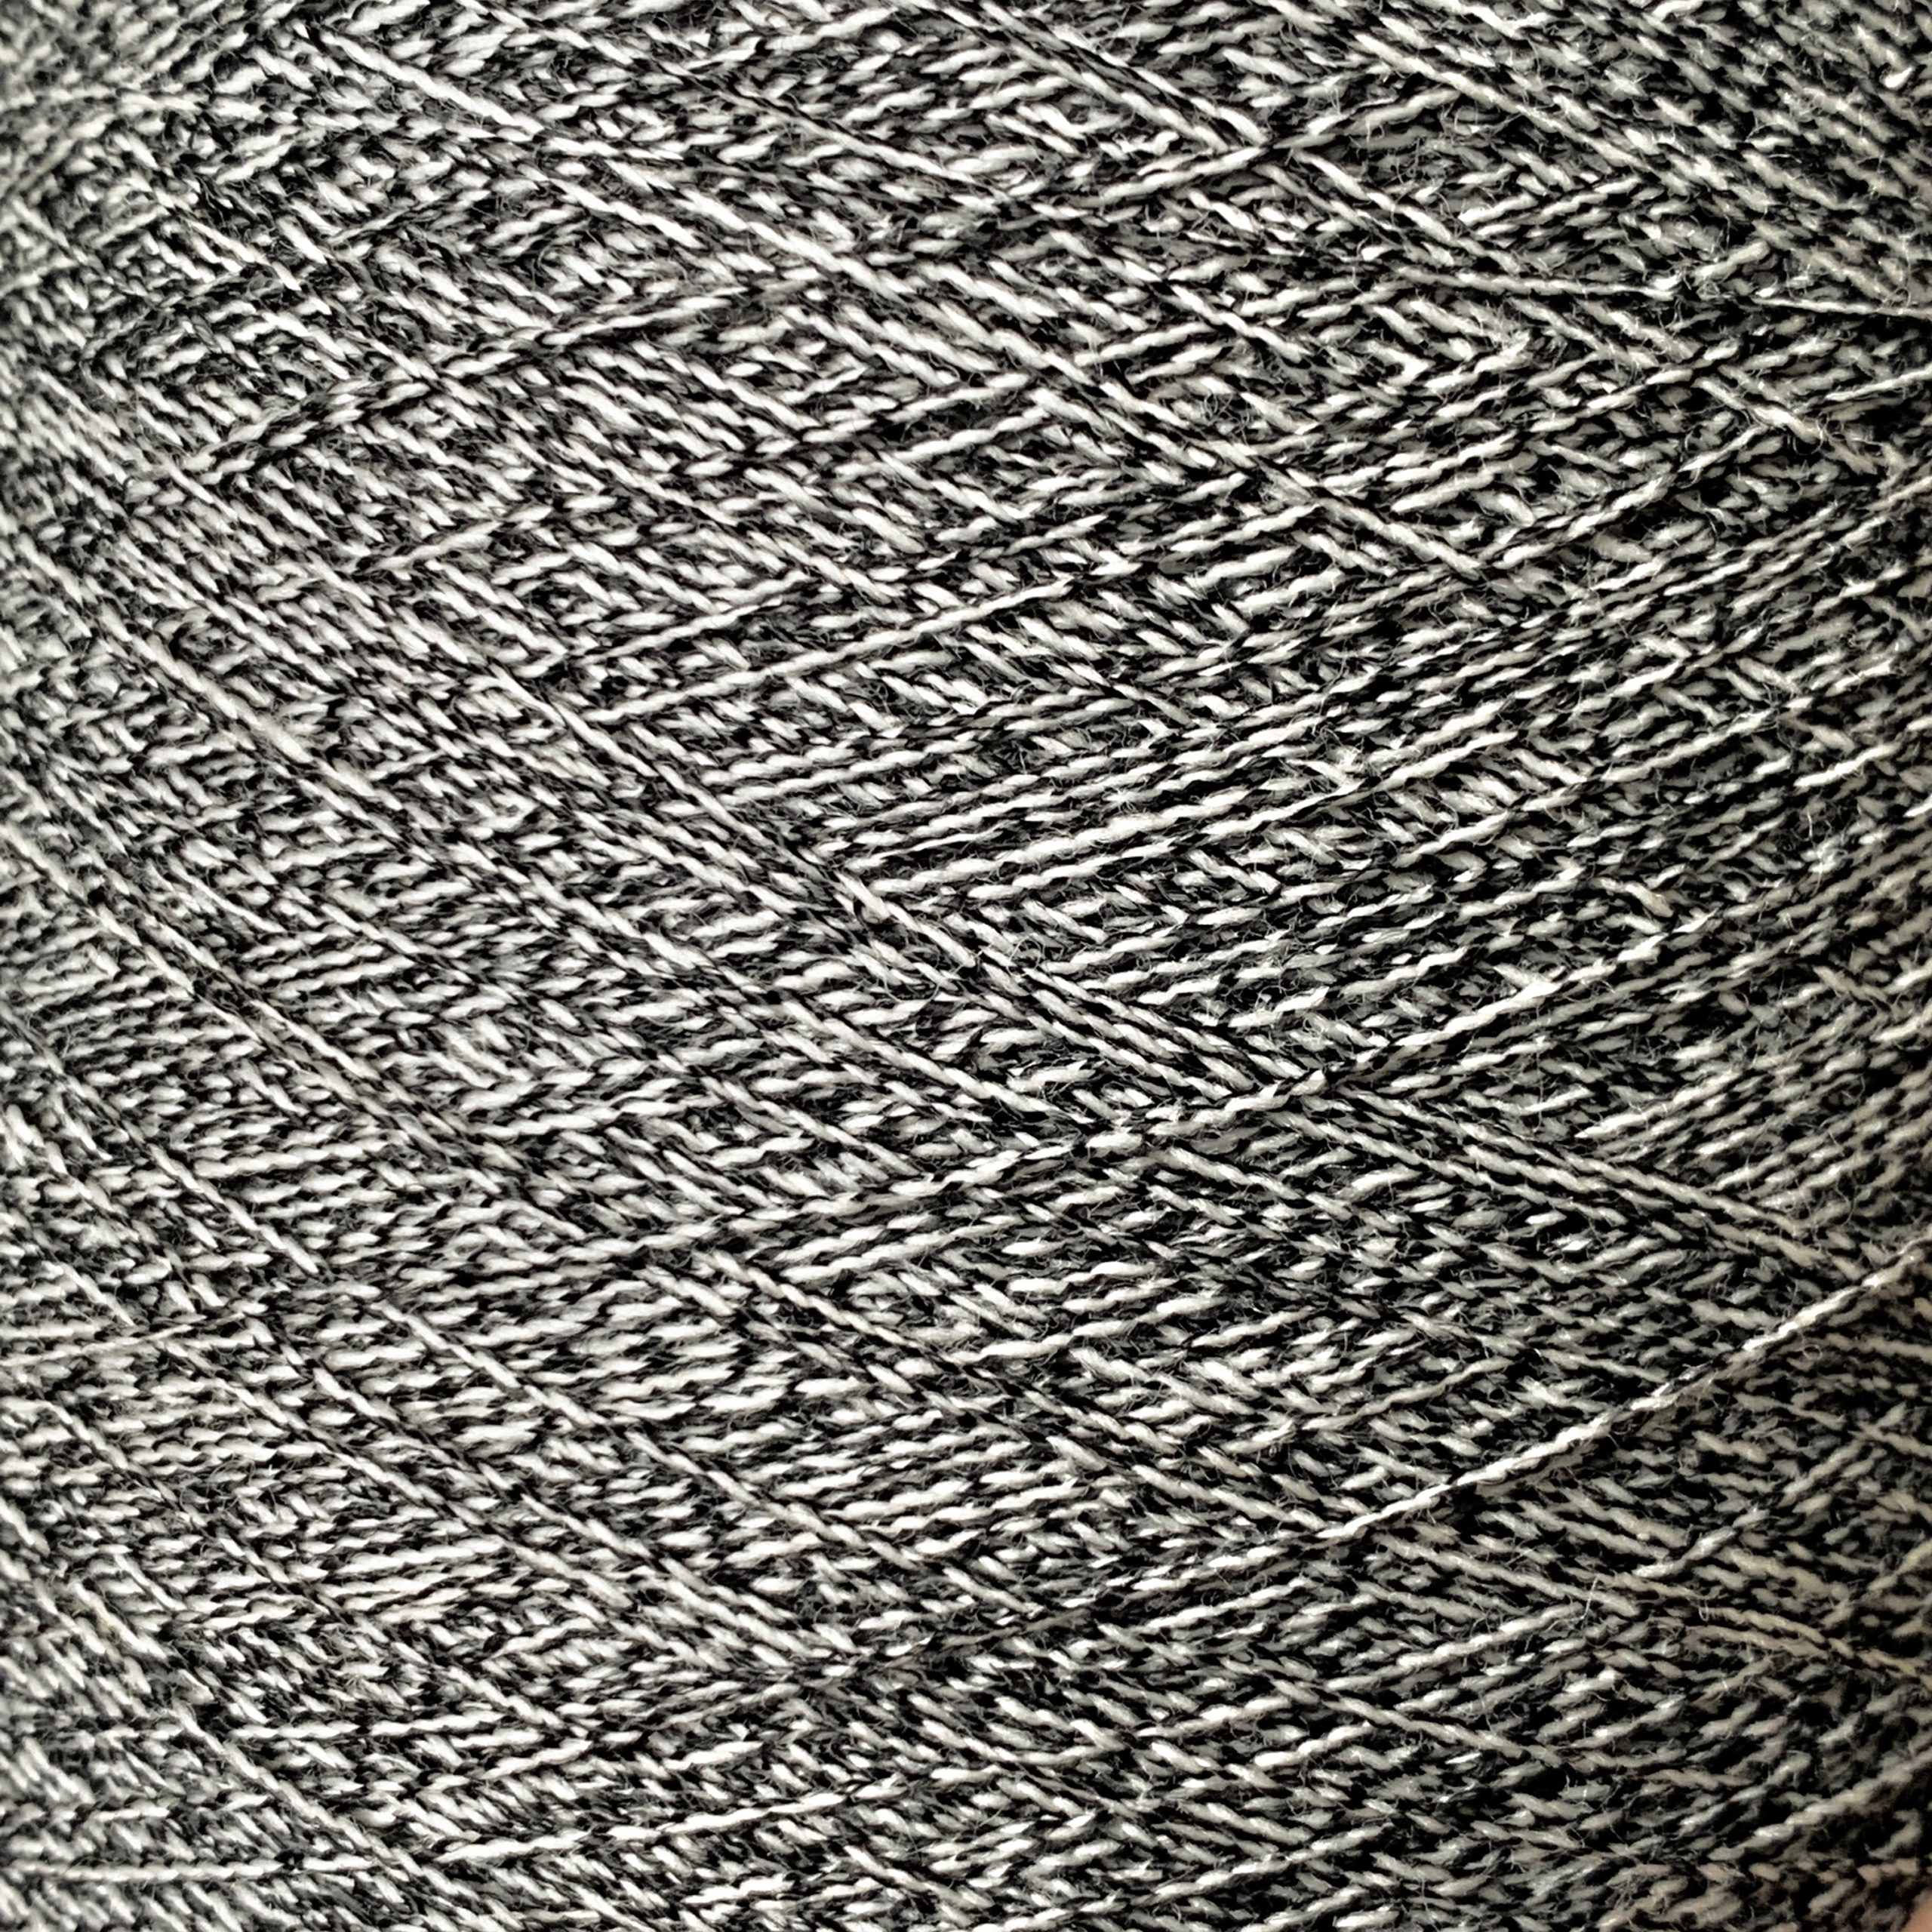 Wool Tweed Yarn